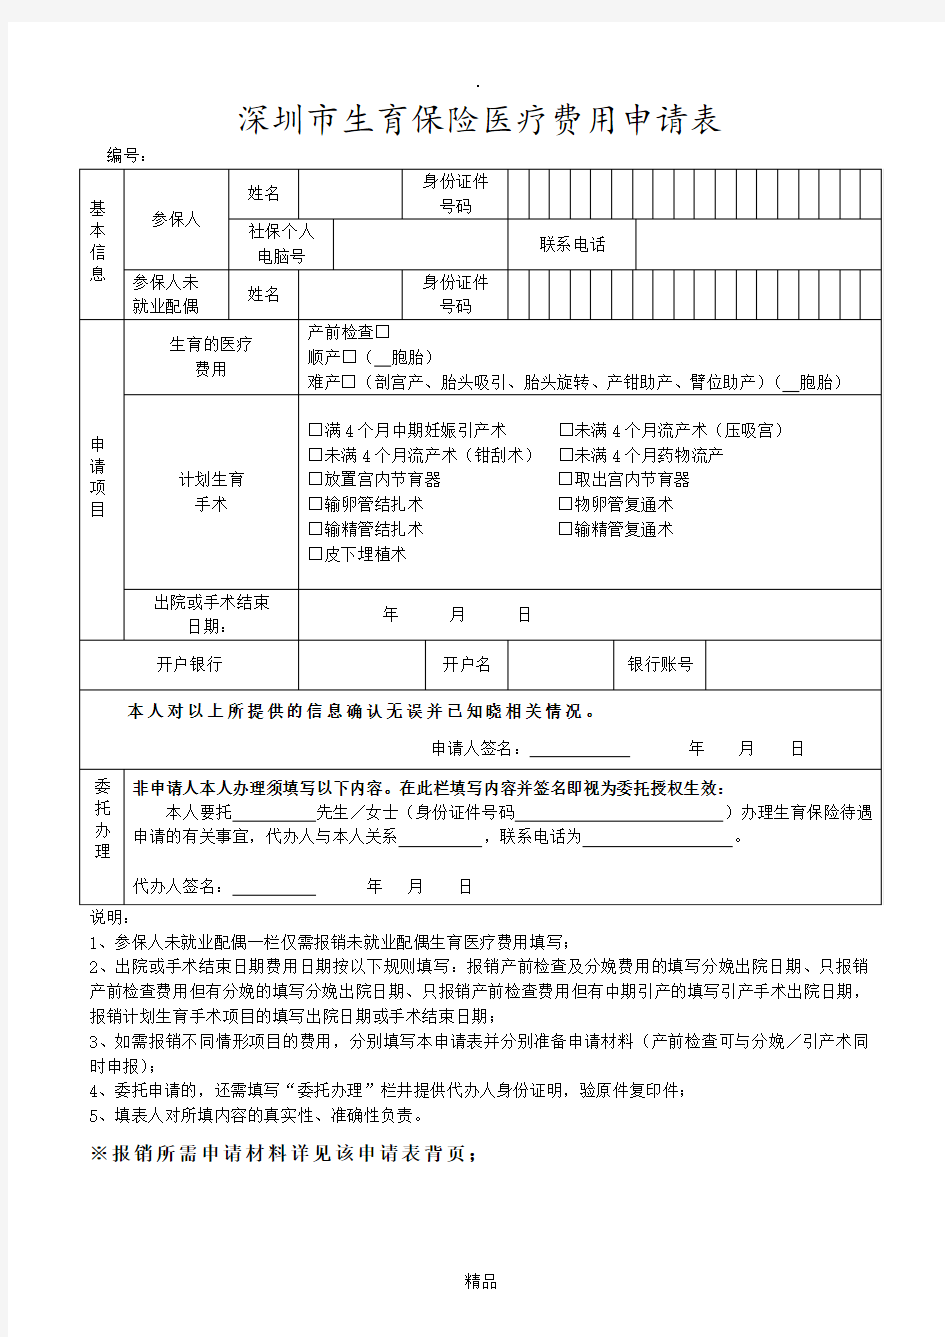 深圳市生育保险医疗费用申请表